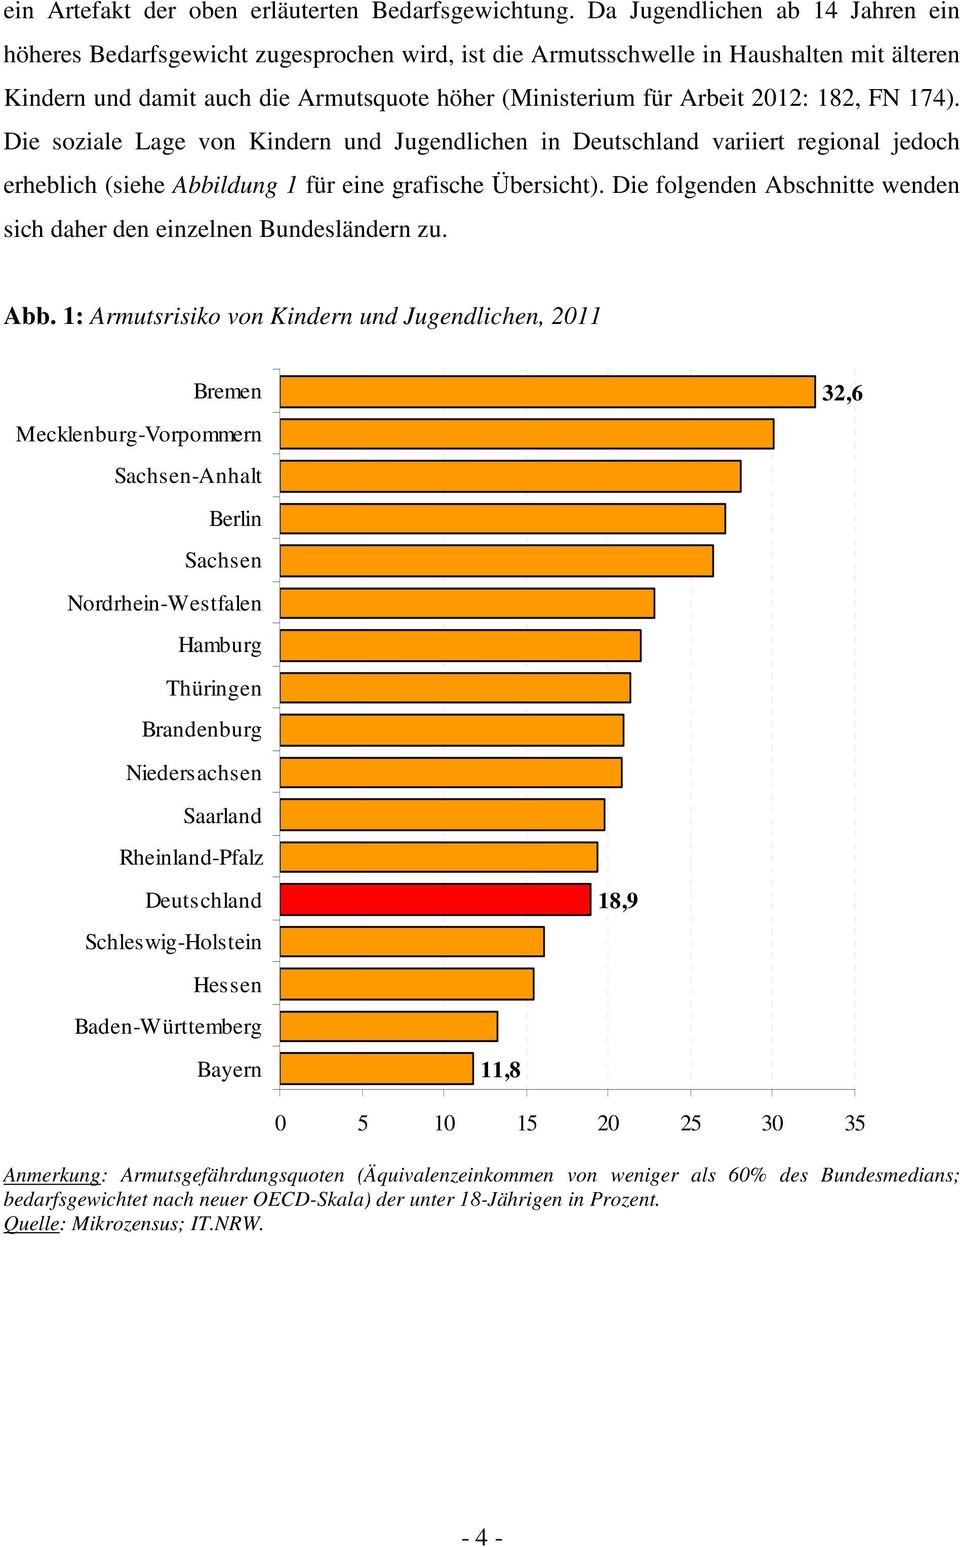 182, FN 174). Die soziale Lage von Kindern und Jugendlichen in Deutschland variiert regional jedoch erheblich (siehe Abbildung 1 für eine grafische Übersicht).